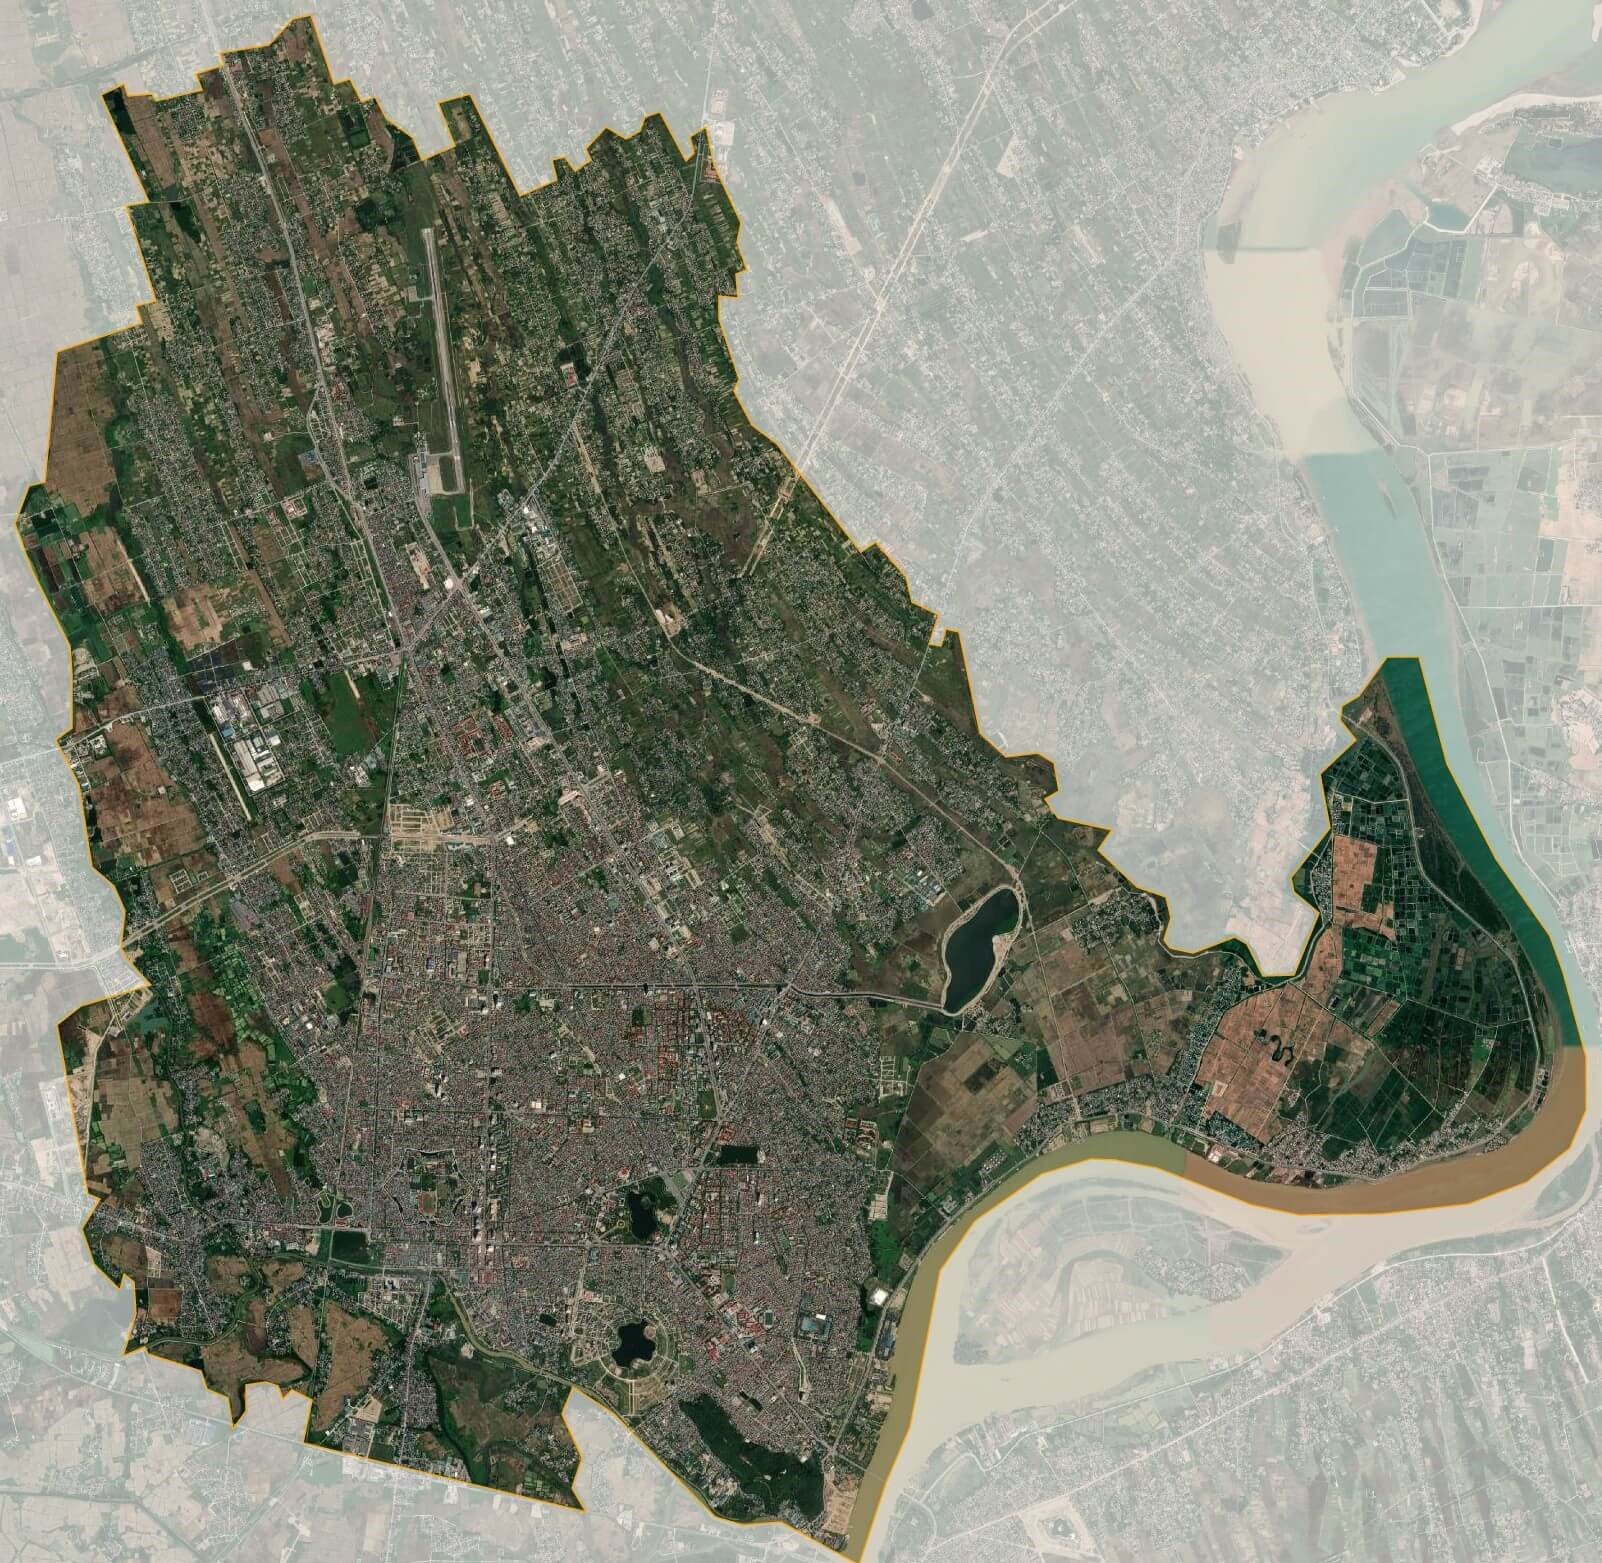 Xem qua bản đồ thật chi tiết của Thành phố Vinh, Nghệ An để khám phá địa danh, quy hoạch và những cơ sở hạ tầng hiện đại, thuận tiện. Bản đồ vệ tinh sẽ giúp bạn tiết kiệm thời gian, tìm kiếm địa điểm nhanh chóng và chính xác hơn.